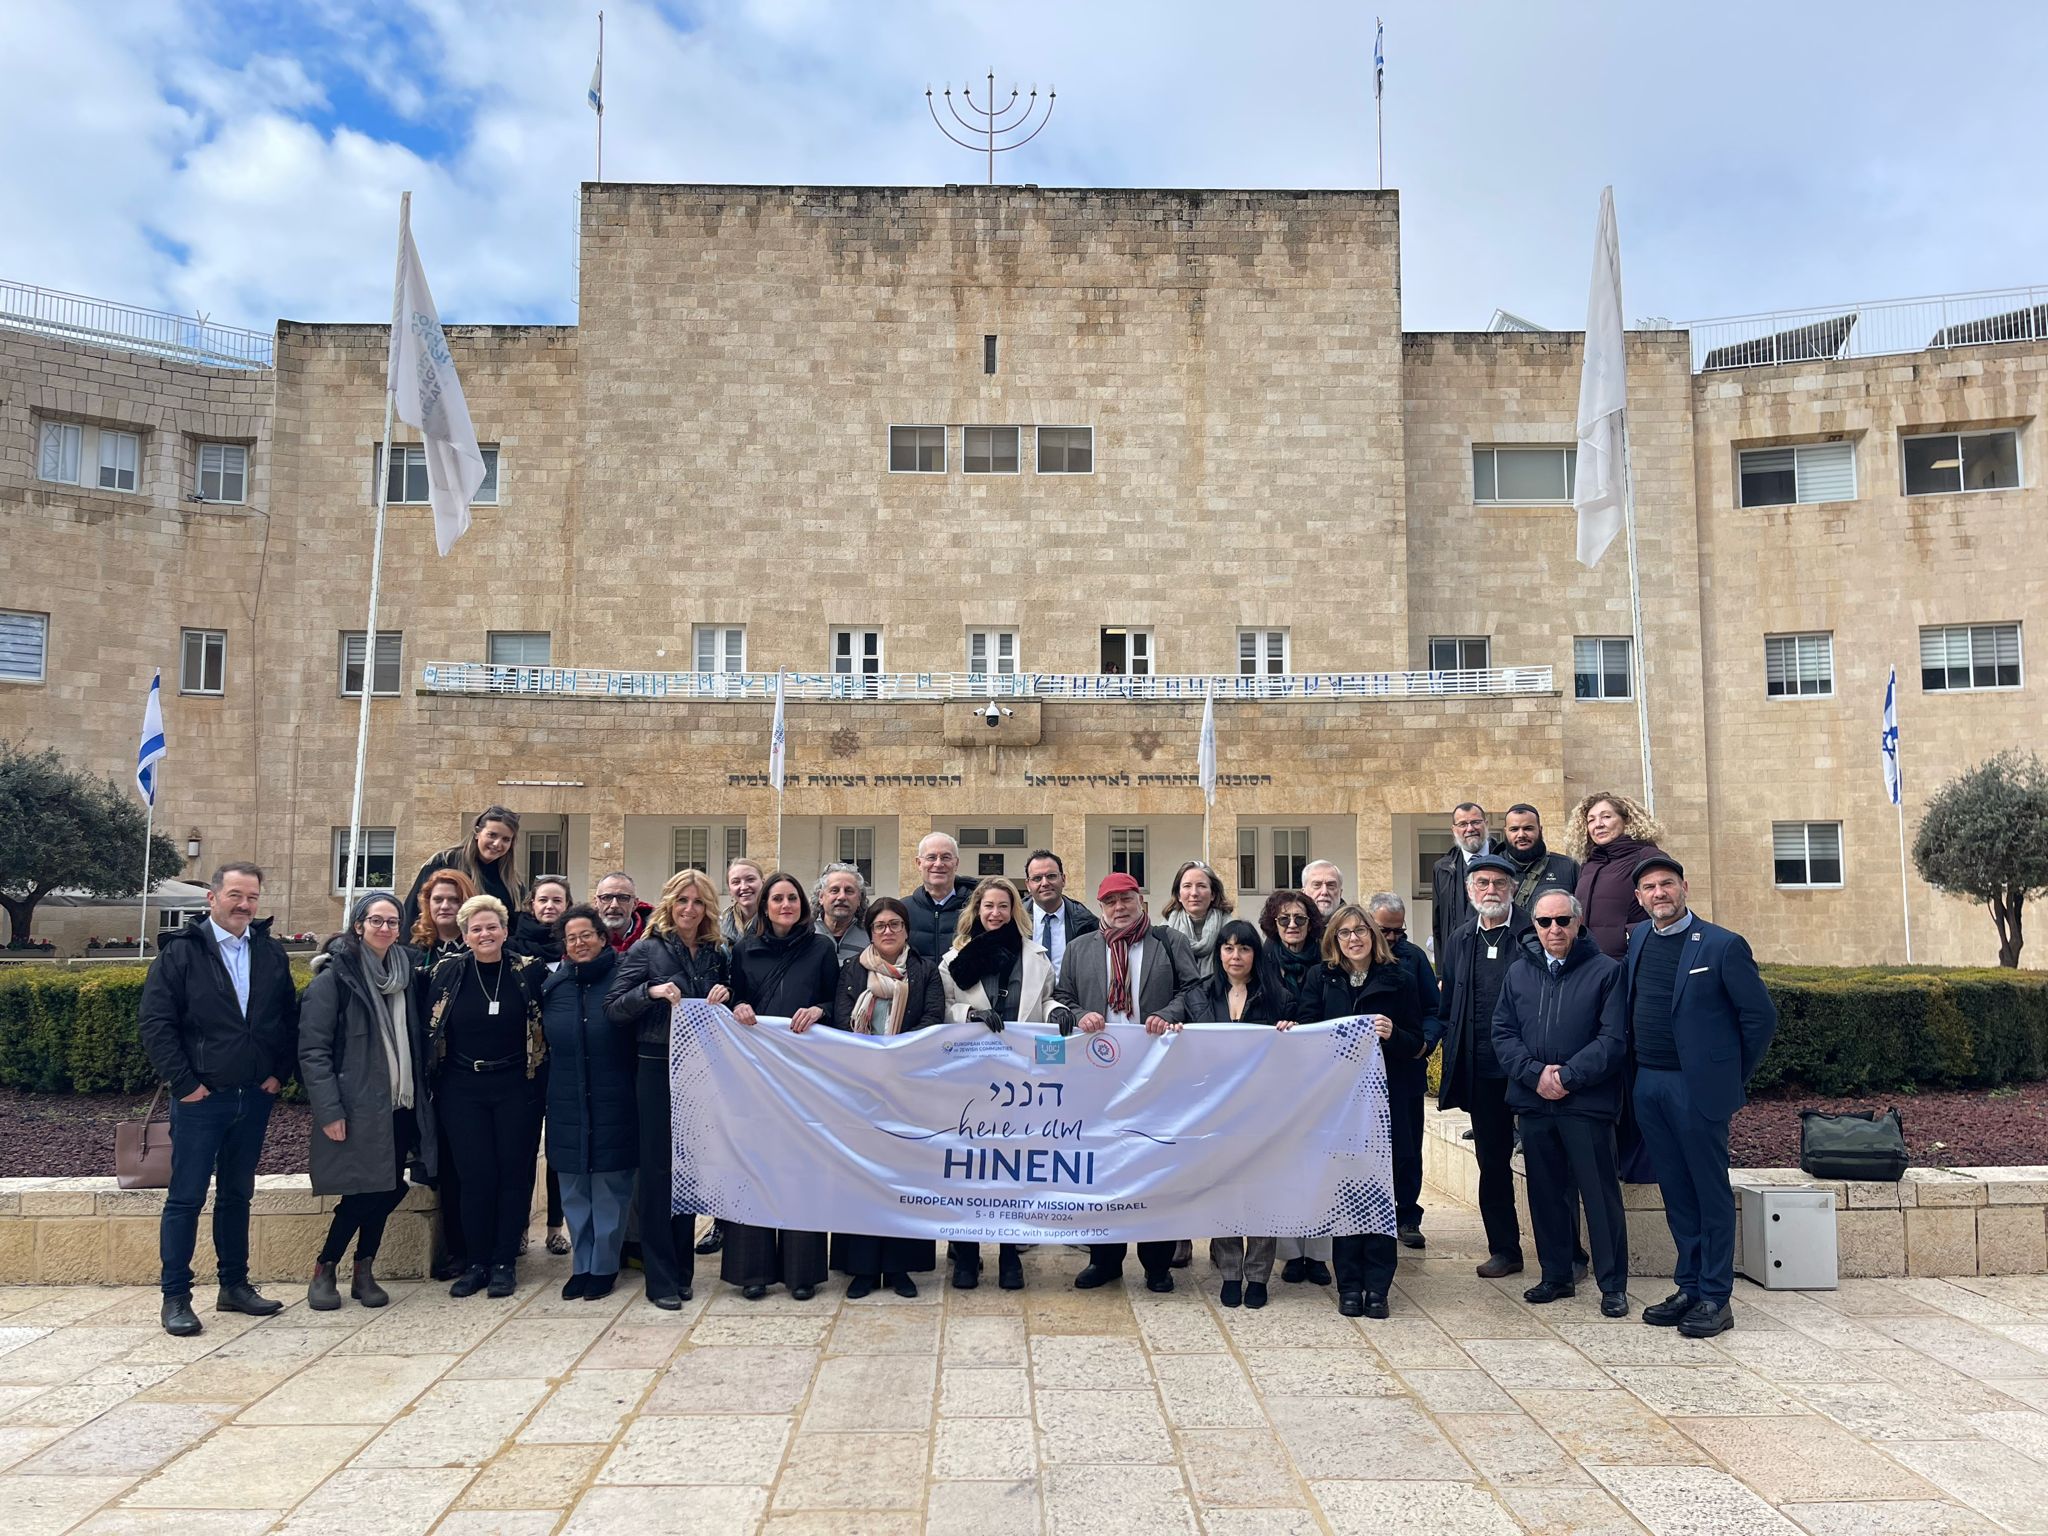 משלחת "הנני" על רקע בניין המוסדות הלאומיים בירושלים